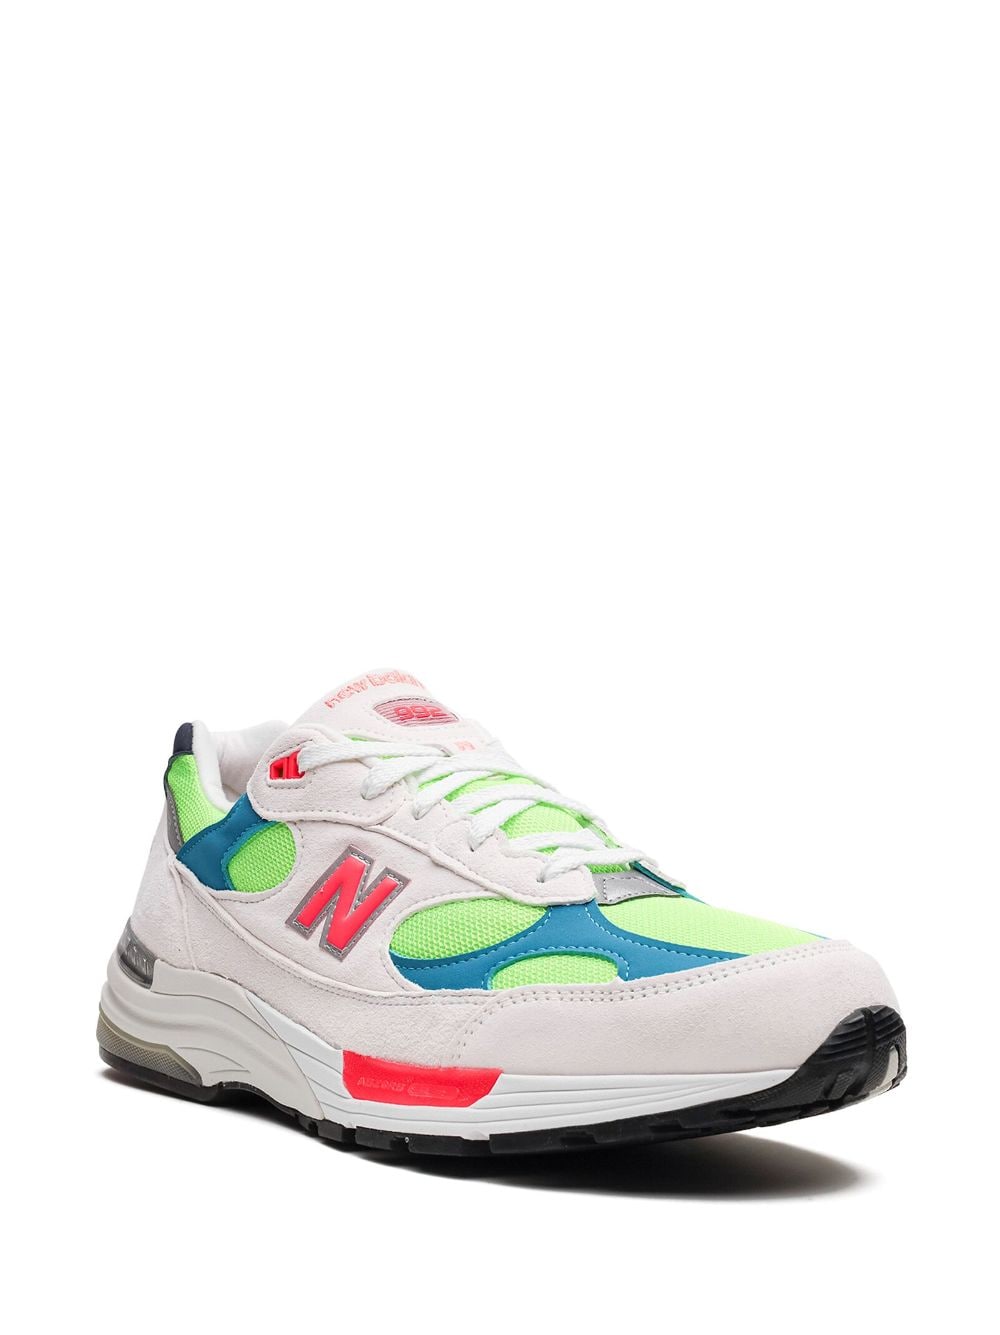 Shop New Balance 992 "white Neon Cyan" Sneakers